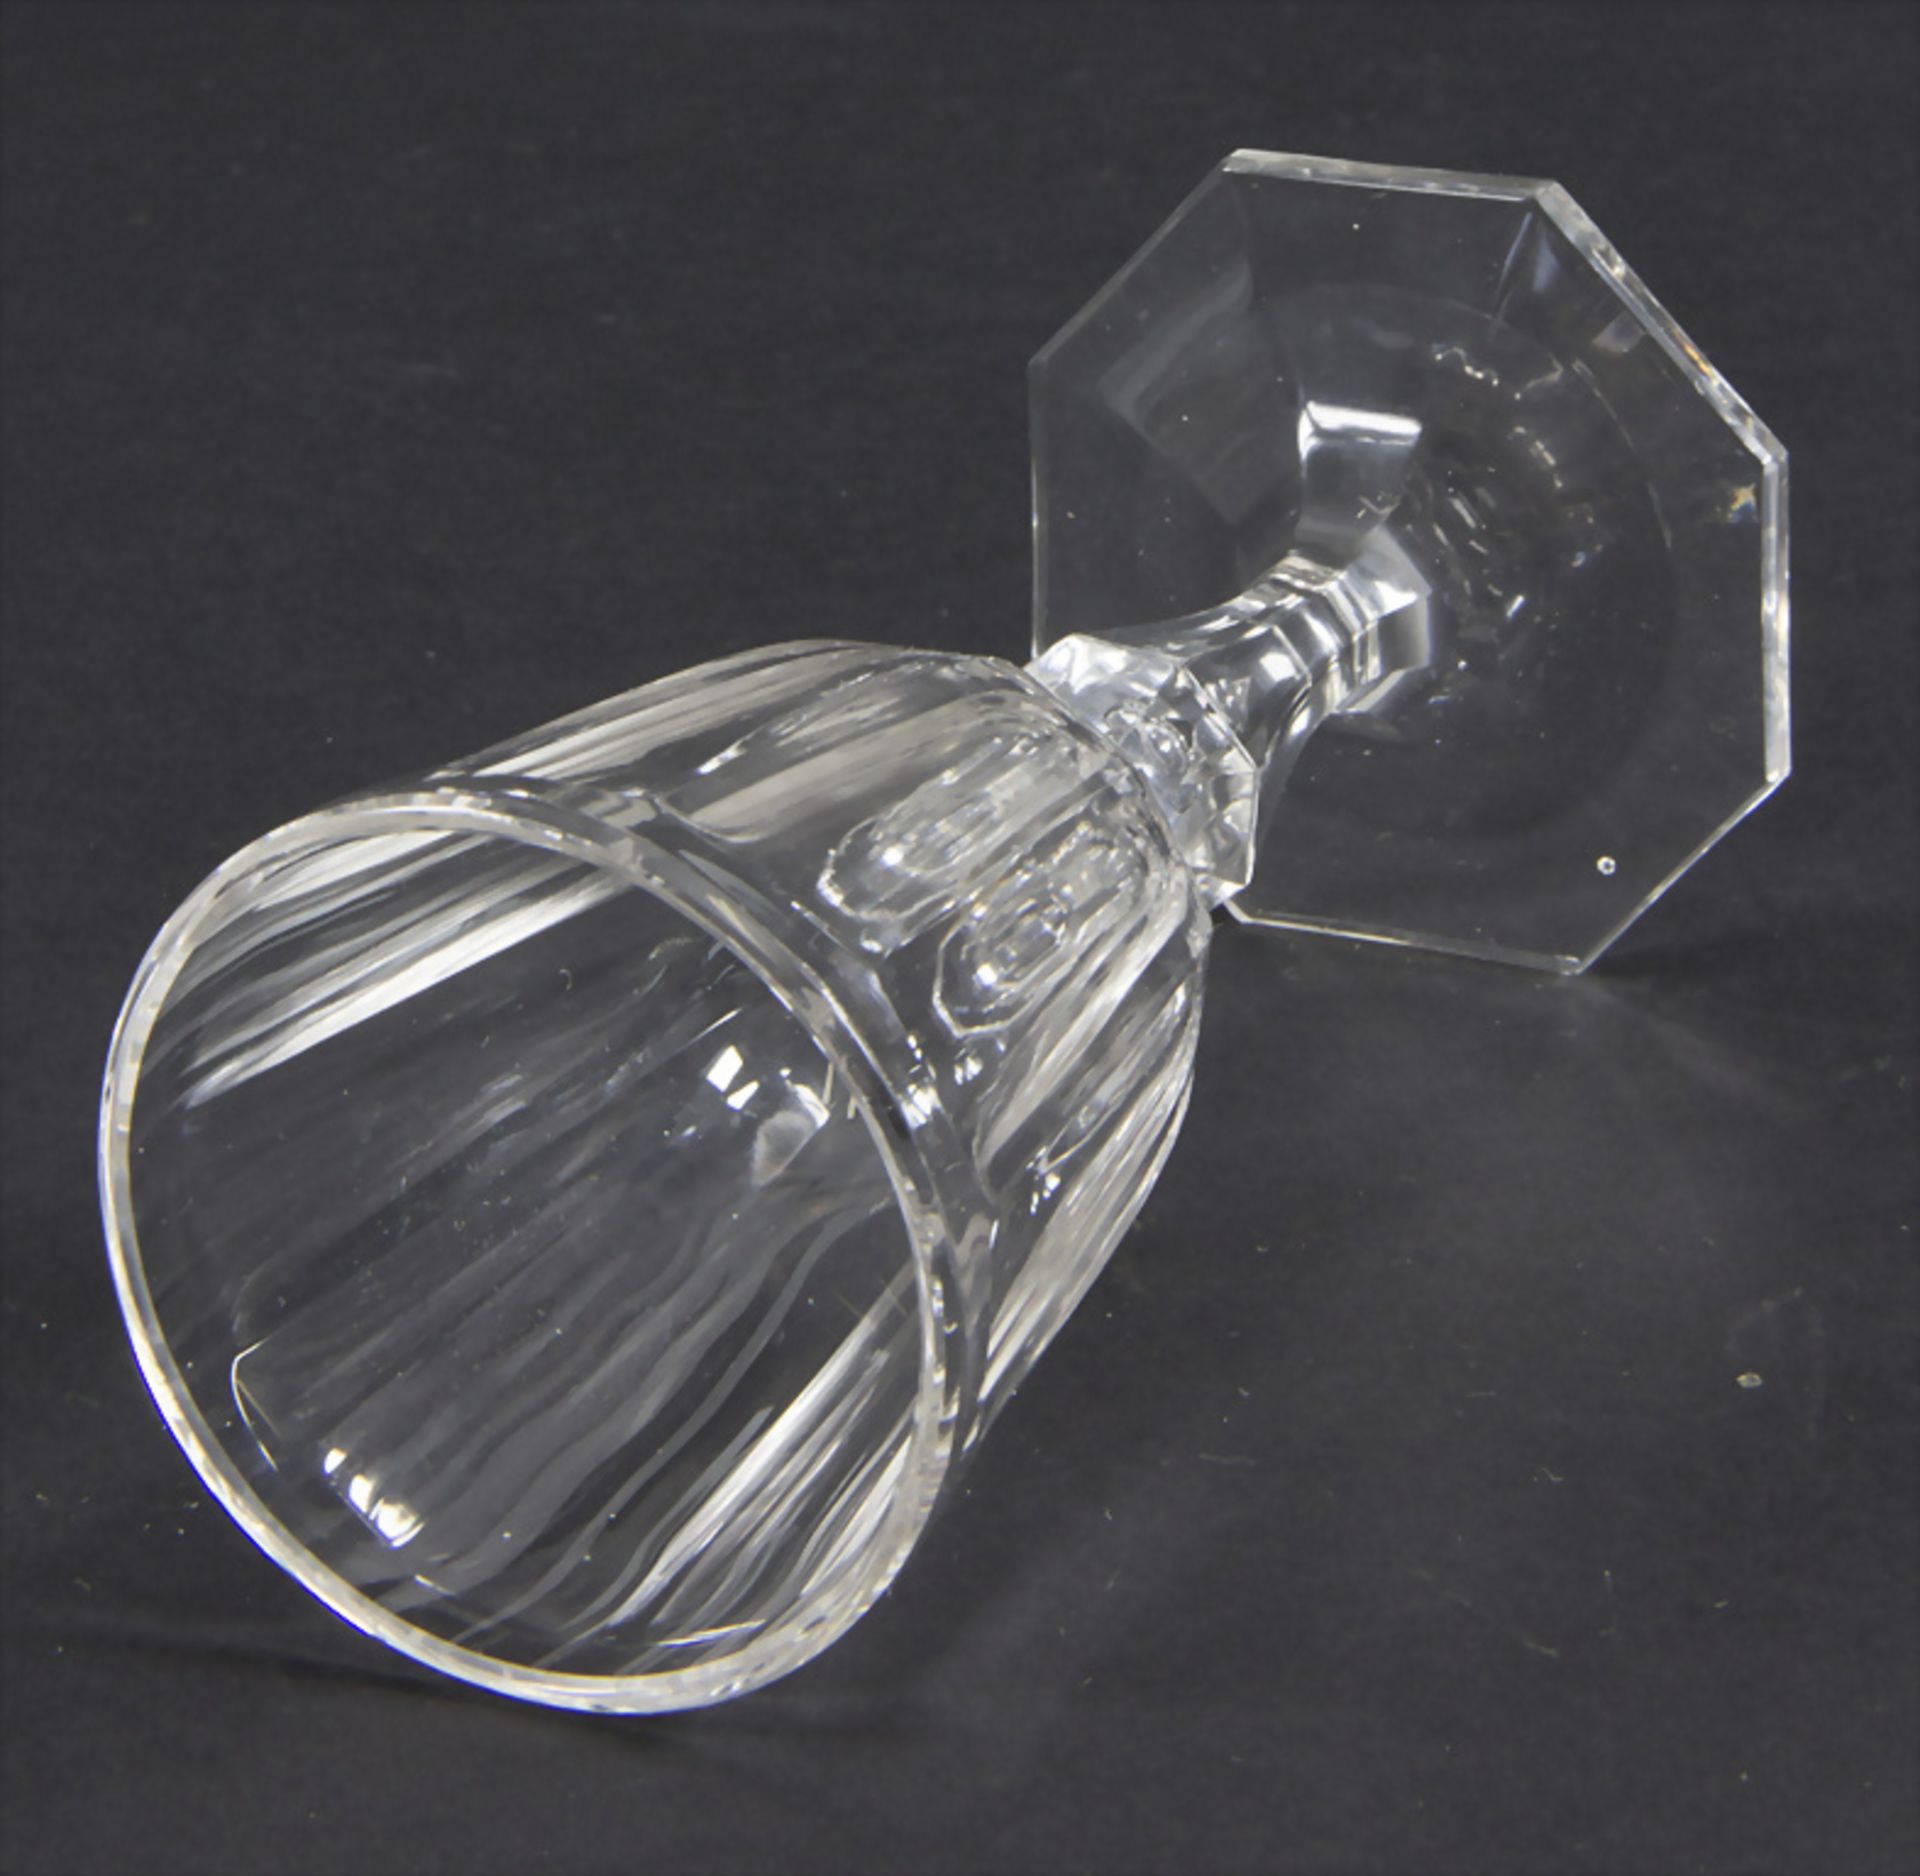 Likörglas / A liqueur glass, J. & L. Lobmeyr, Wien, um 1900 - Bild 3 aus 4